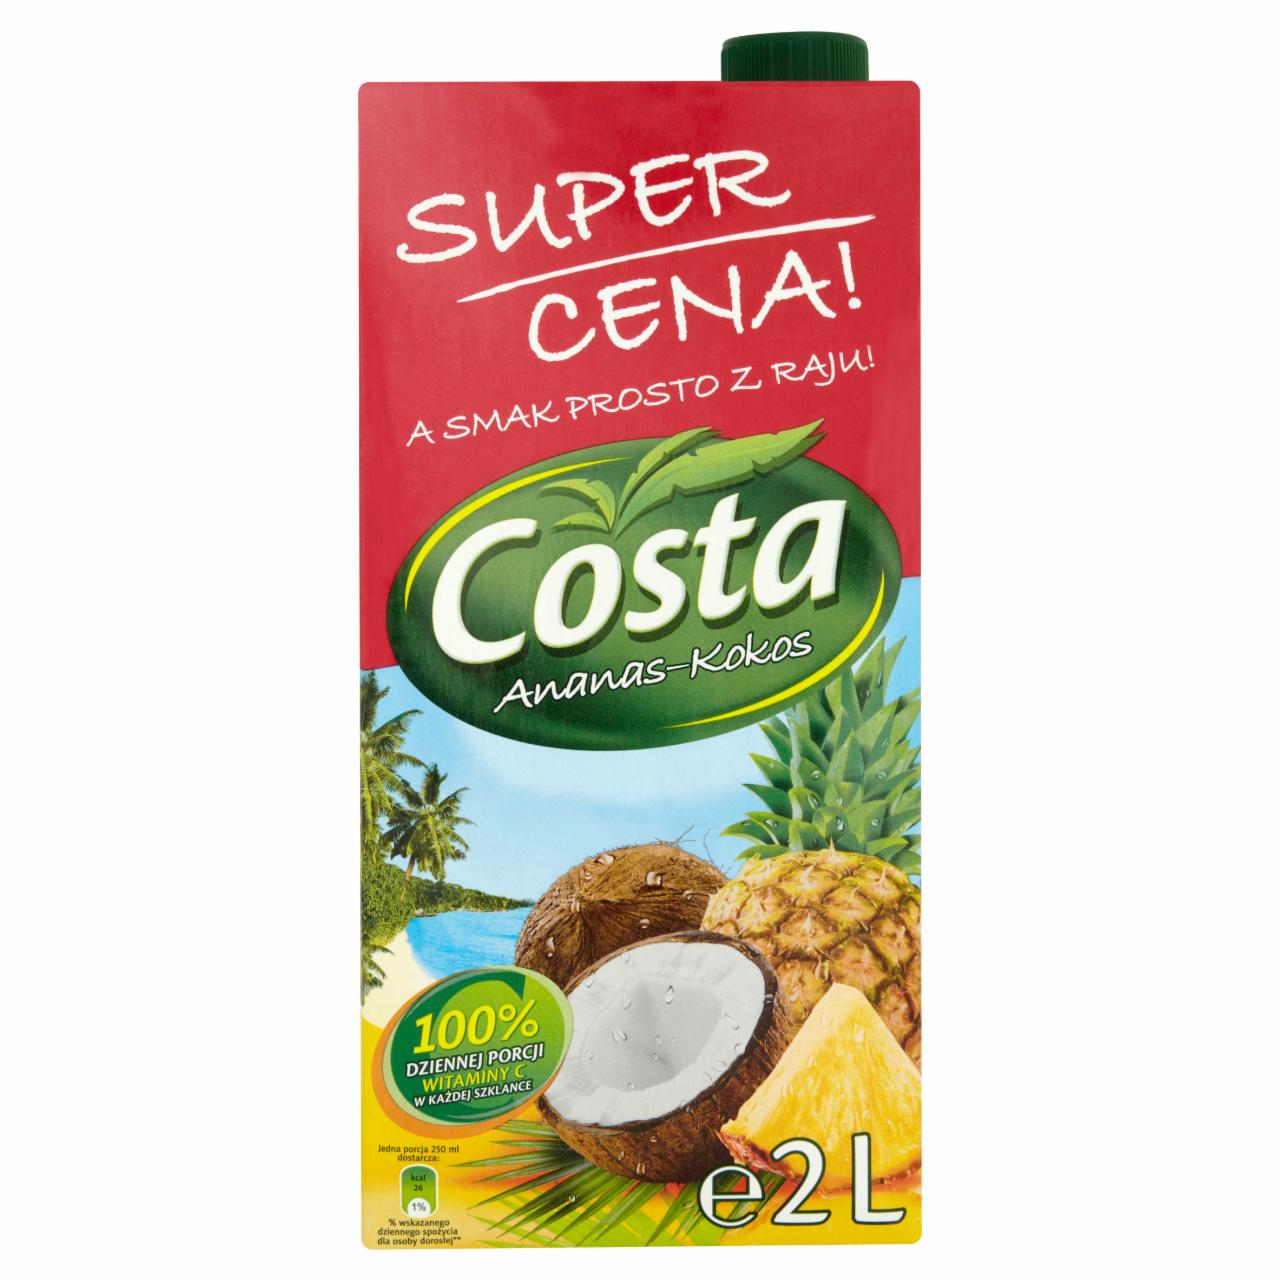 Zdjęcia - Costa Ananas-Kokos Napój 2 l